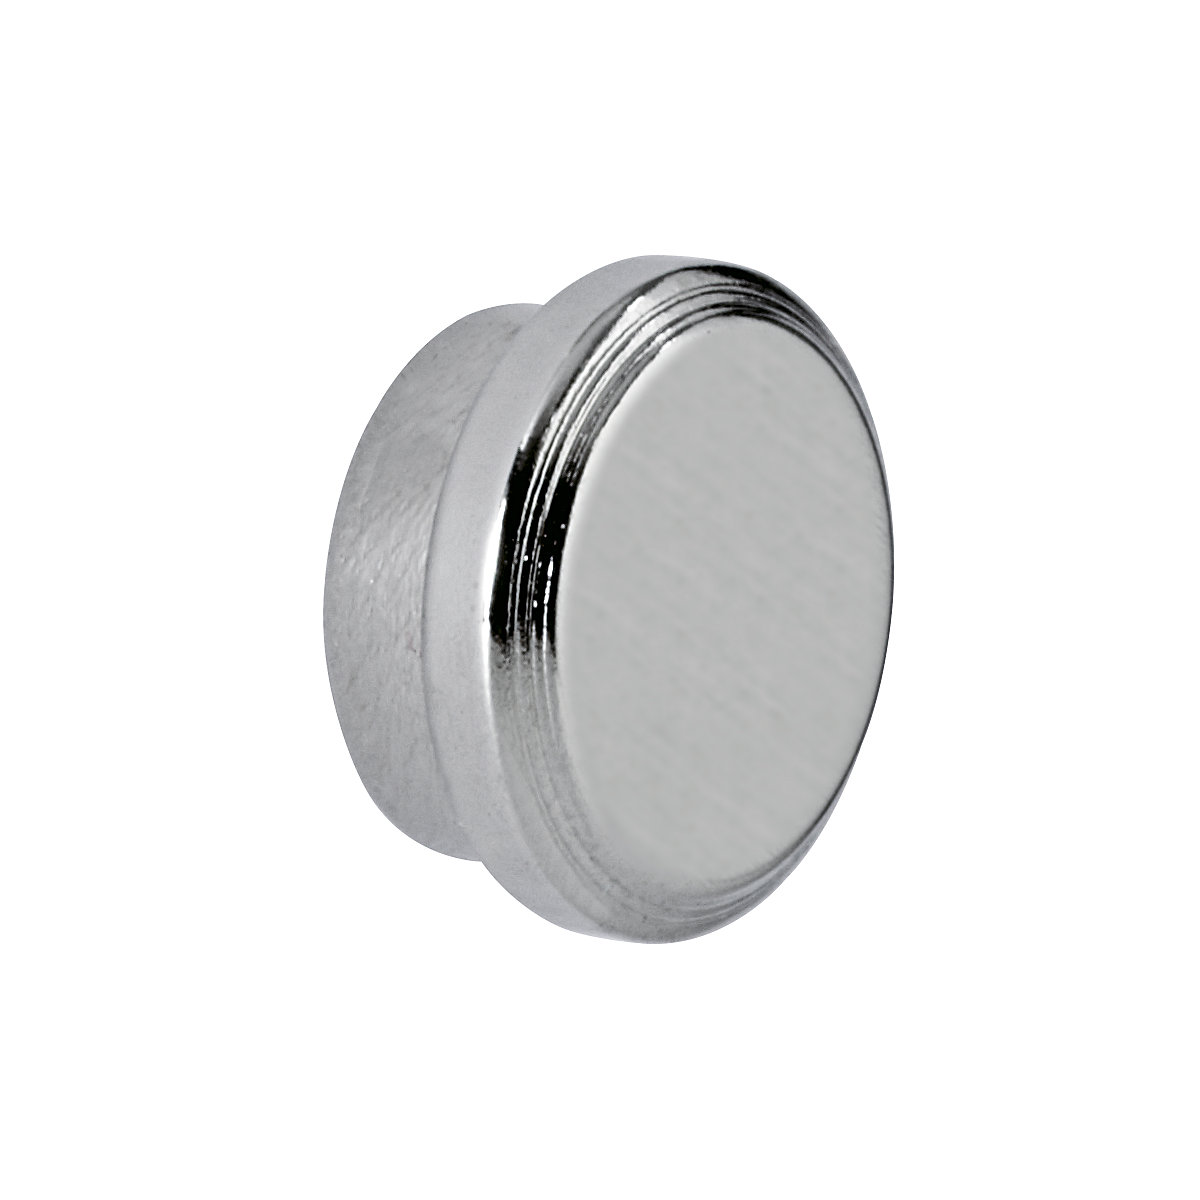 Silný neodymový magnet – MAUL, kruhový tvar, Ø 16 mm, adhezní síla 5 kg, bal.j. 10 ks-4